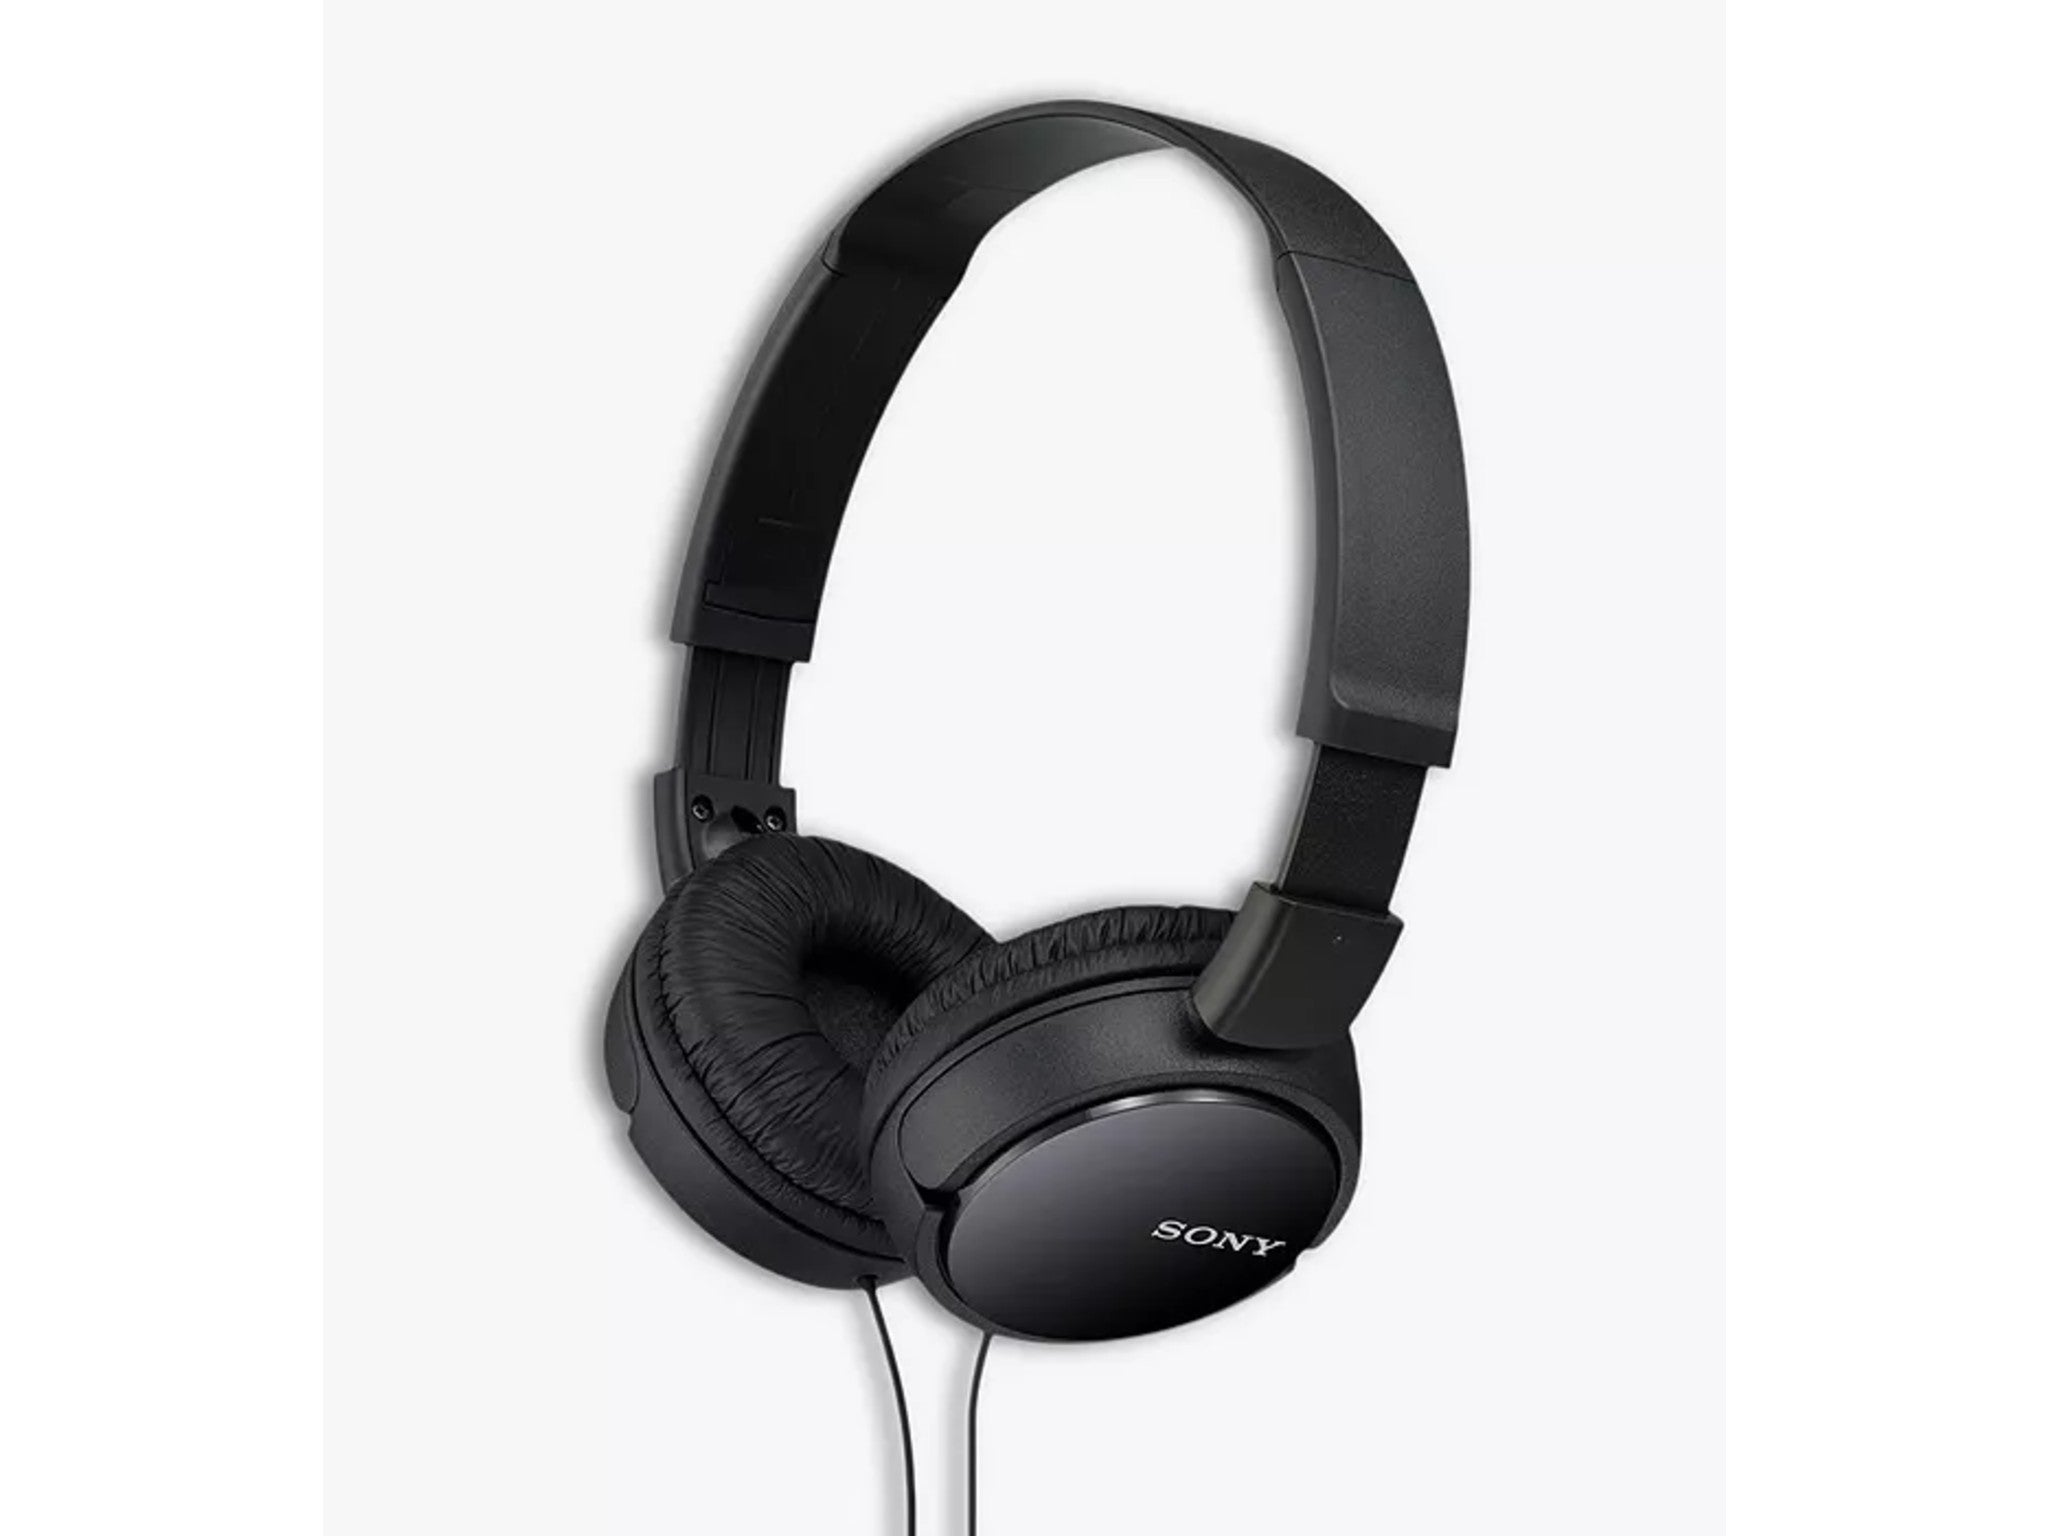 Sony headphones indybest.jpeg